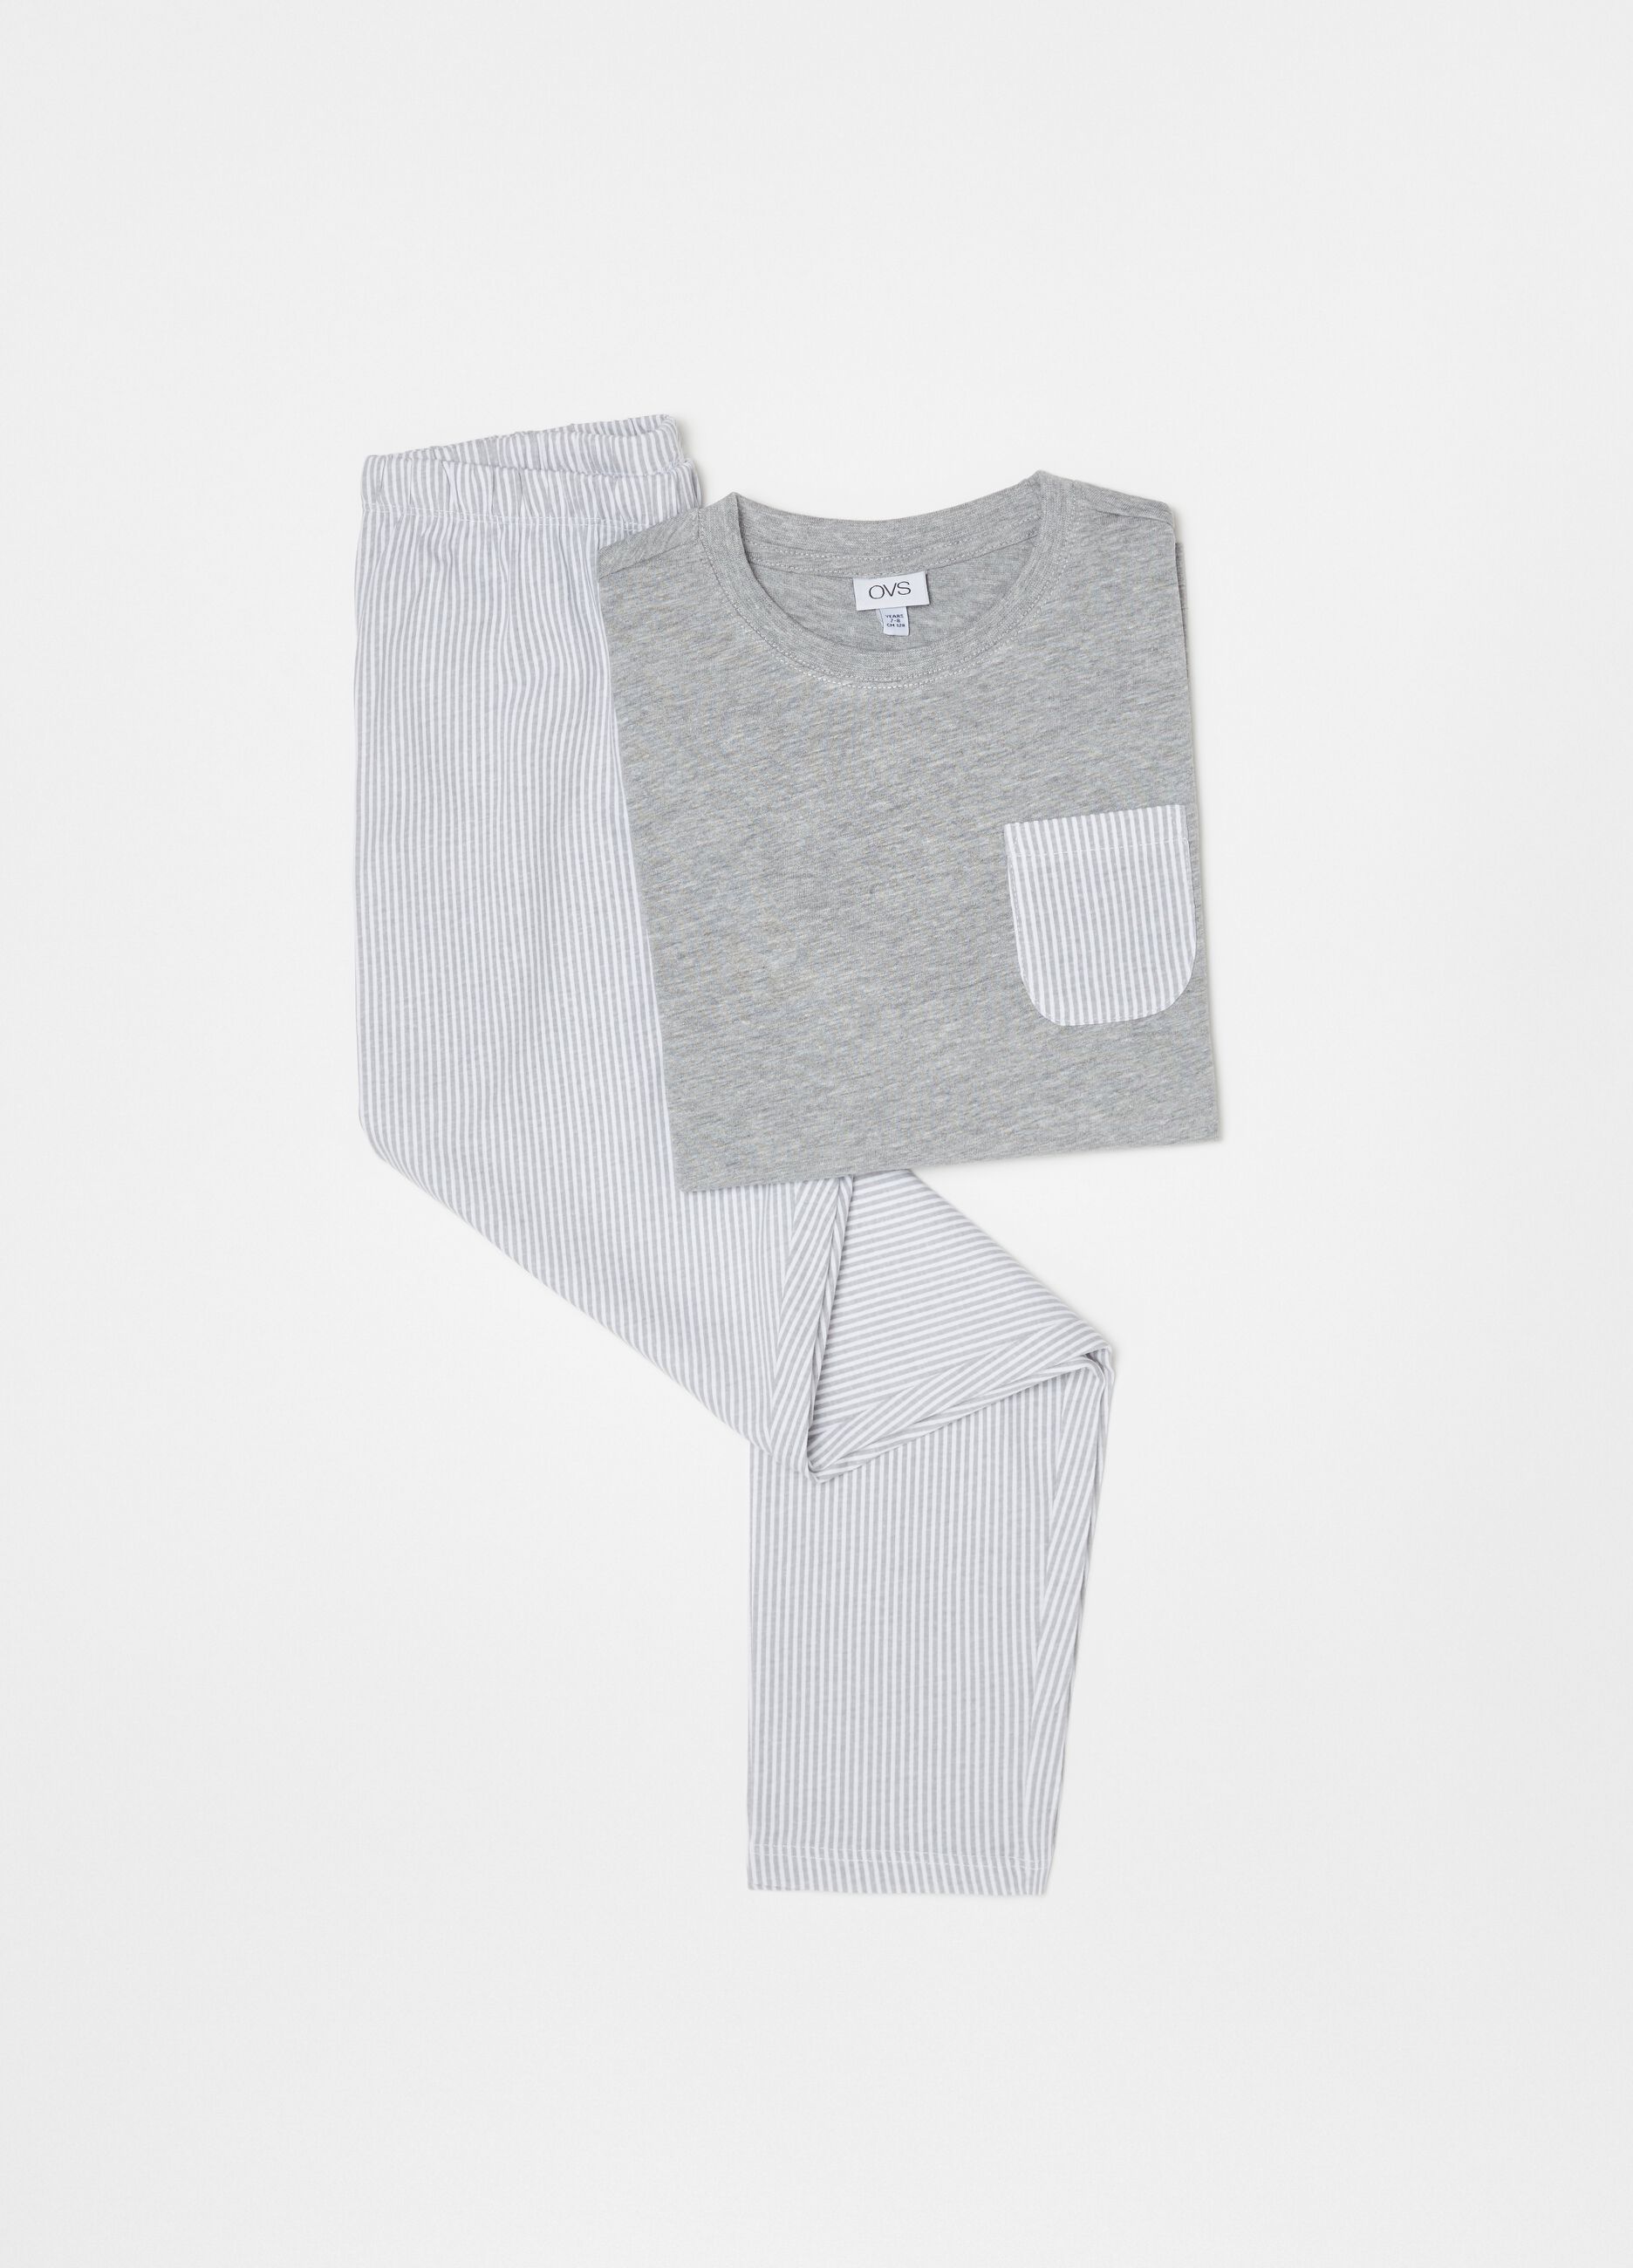 100% cotton pyjamas with striped pocket